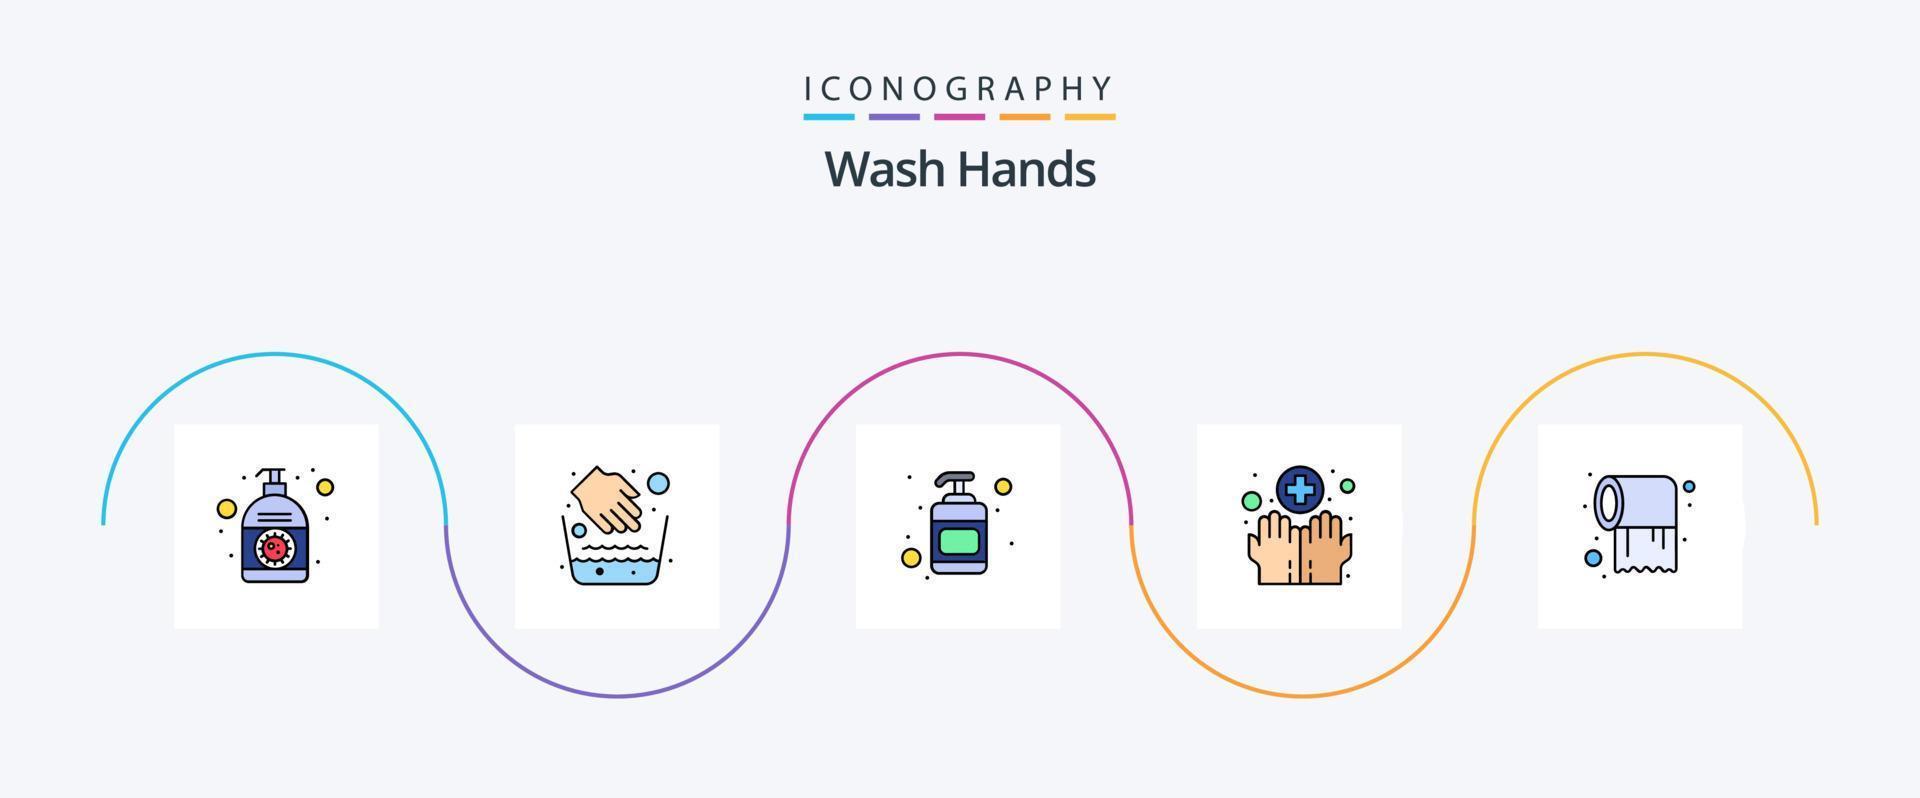 lave as mãos com linha cheia de pacote de 5 ícones planos, incluindo rolo. lavando. tigela de água. médico. mãos vetor